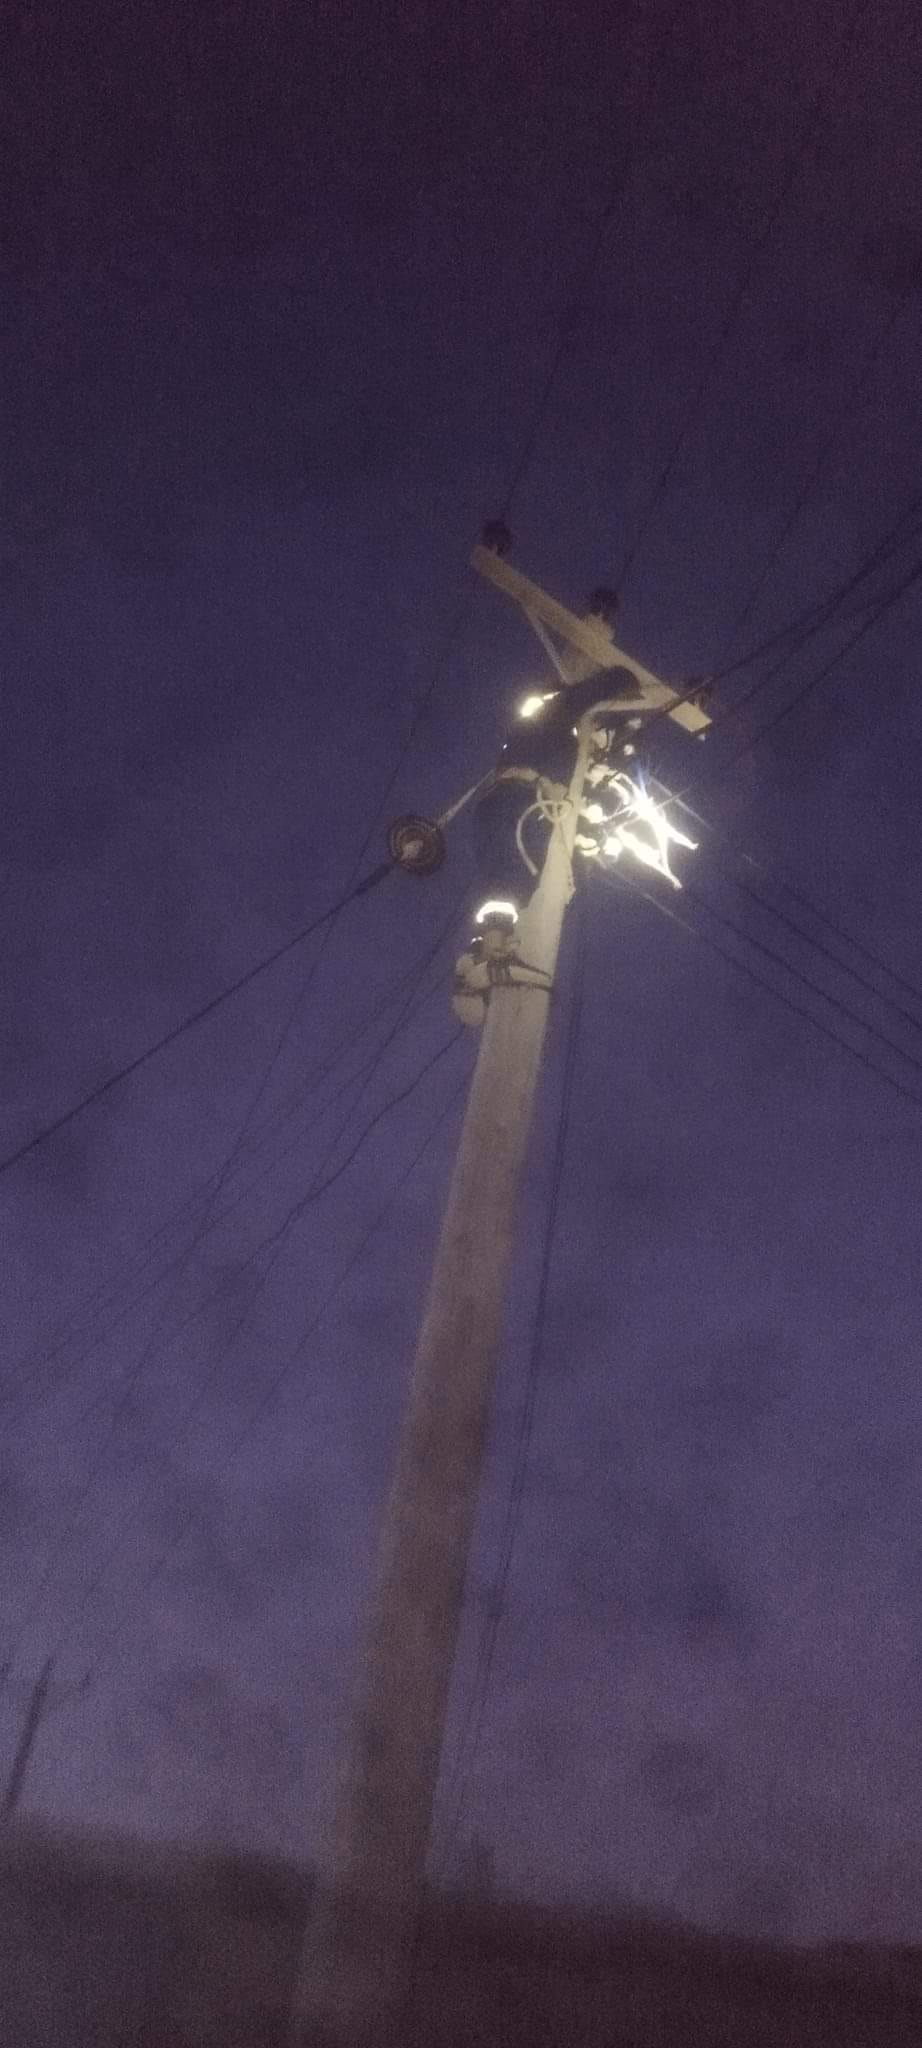  الشركة العامة للكهرباء تعلن إعادة التيار إلى مناطق في مدينة درنة .